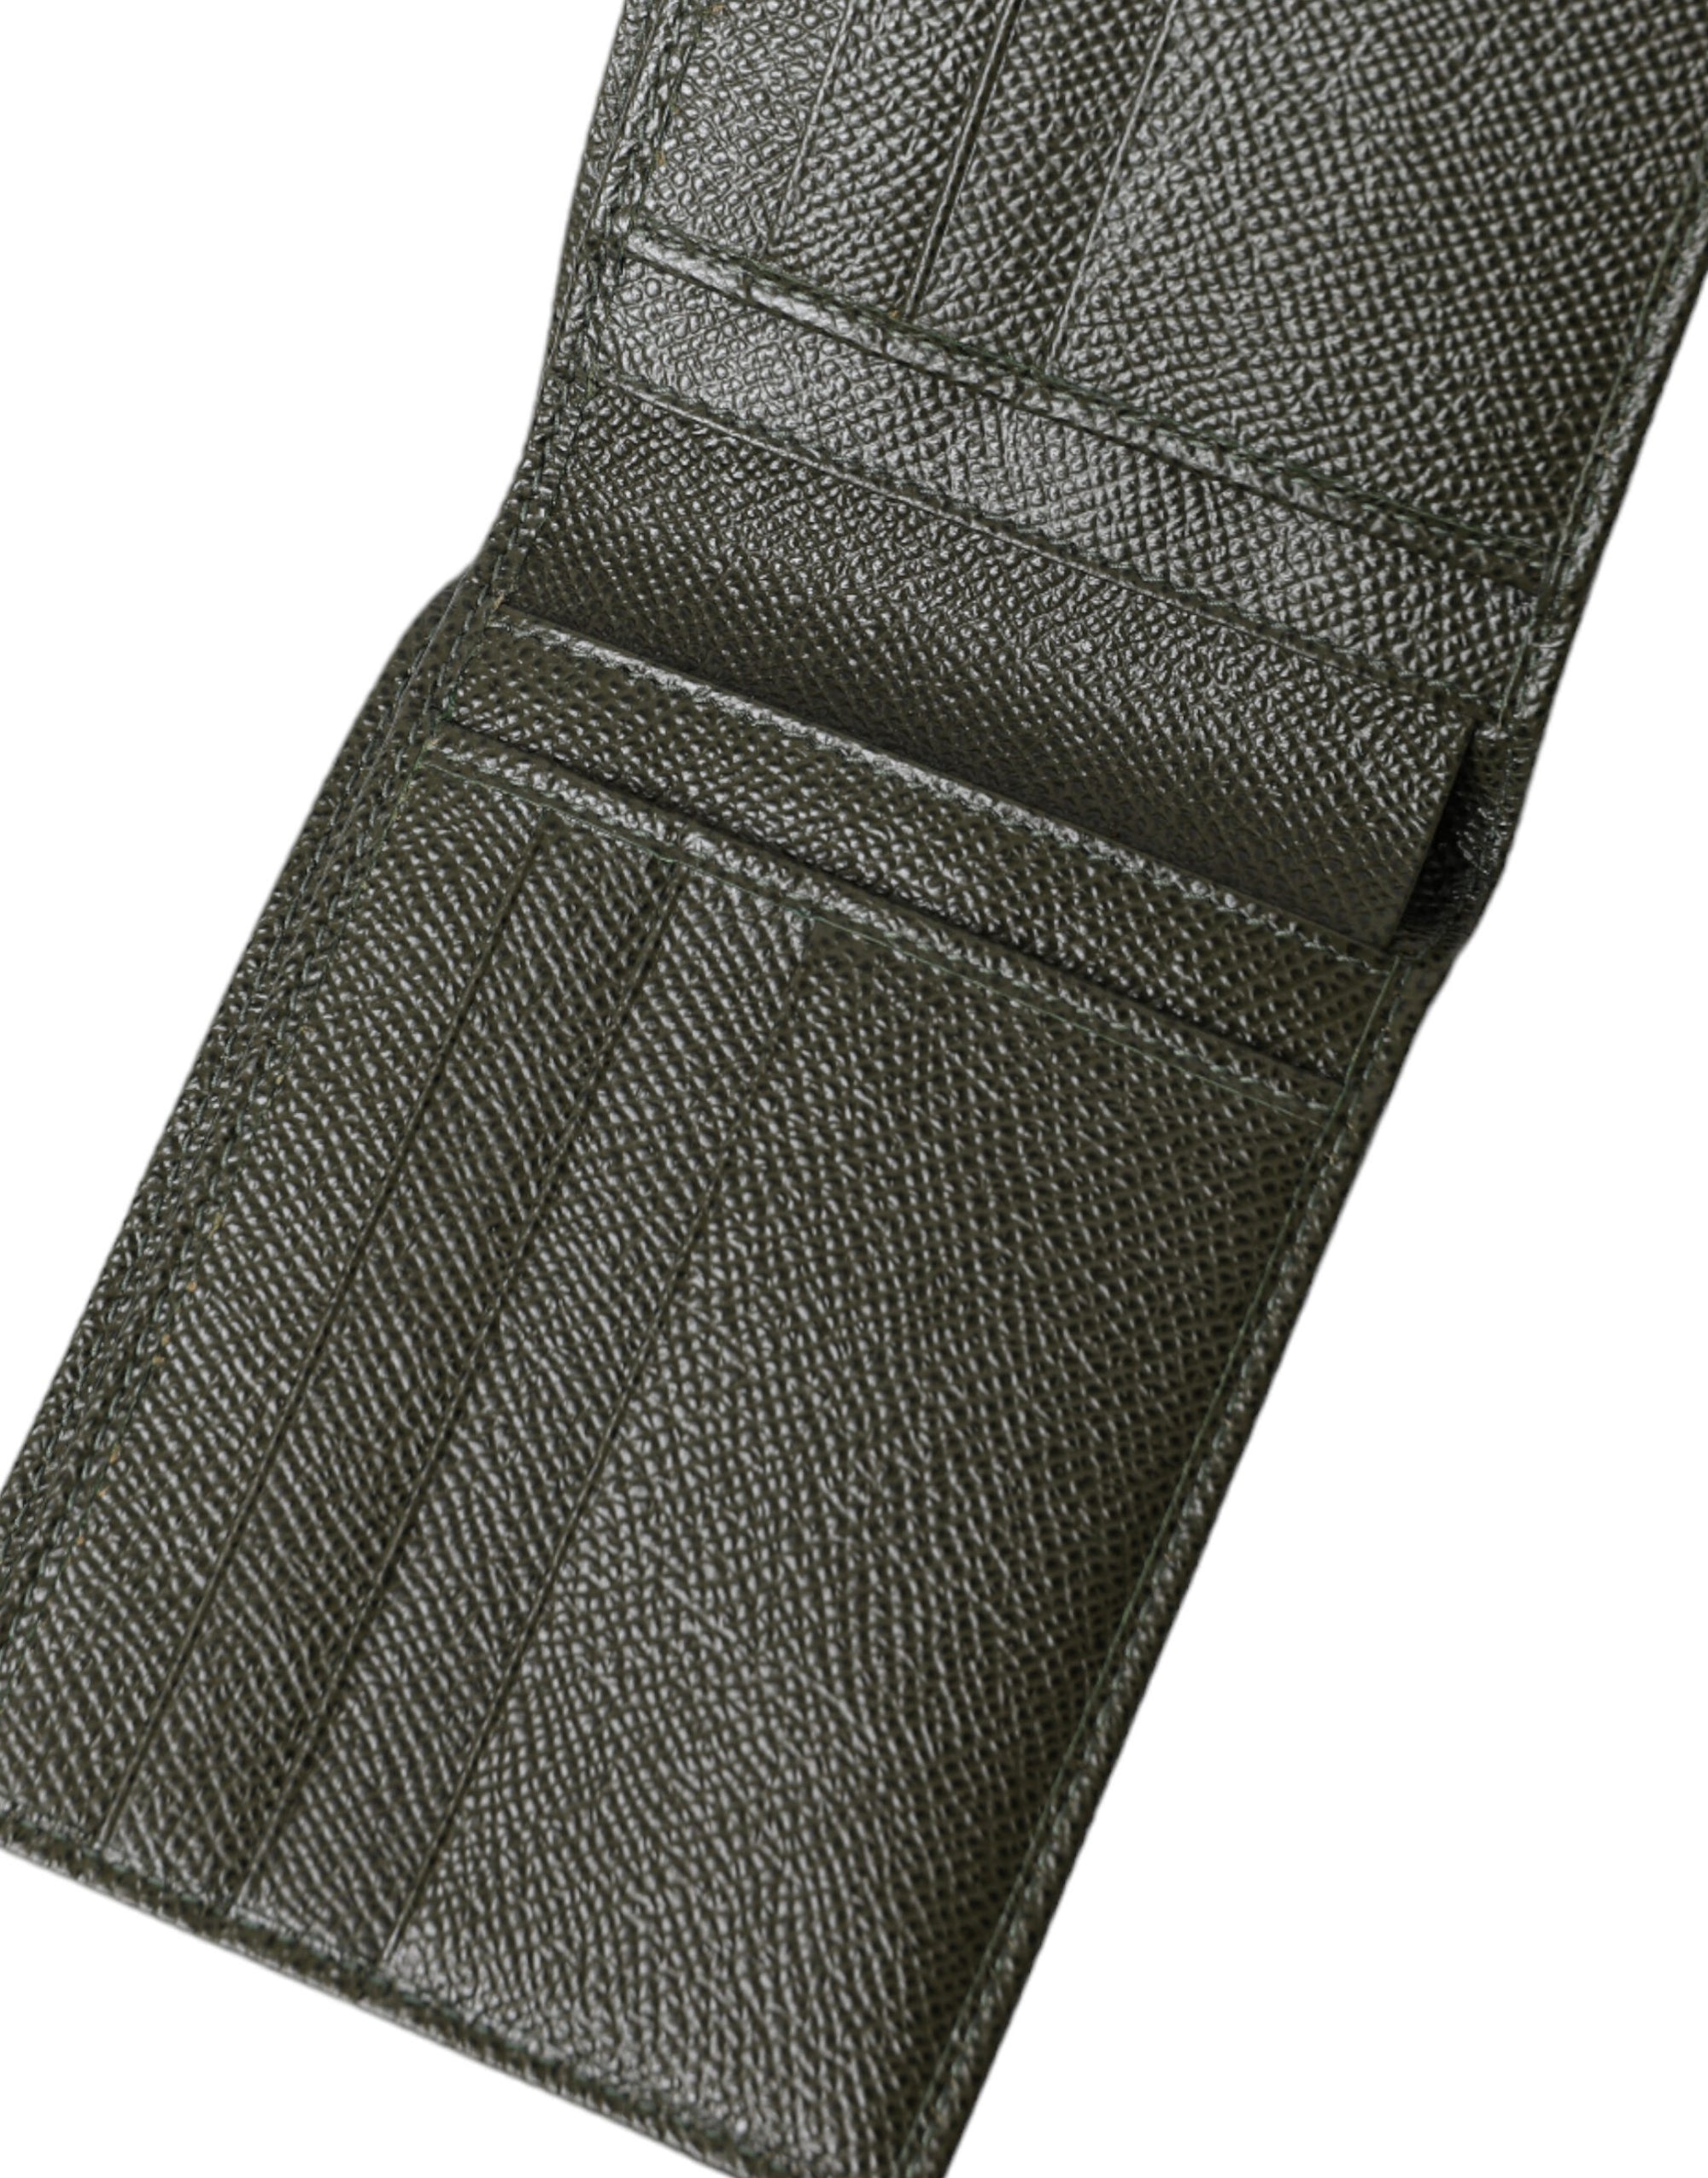 Elegant Olive Green Leather Bifold Wallet